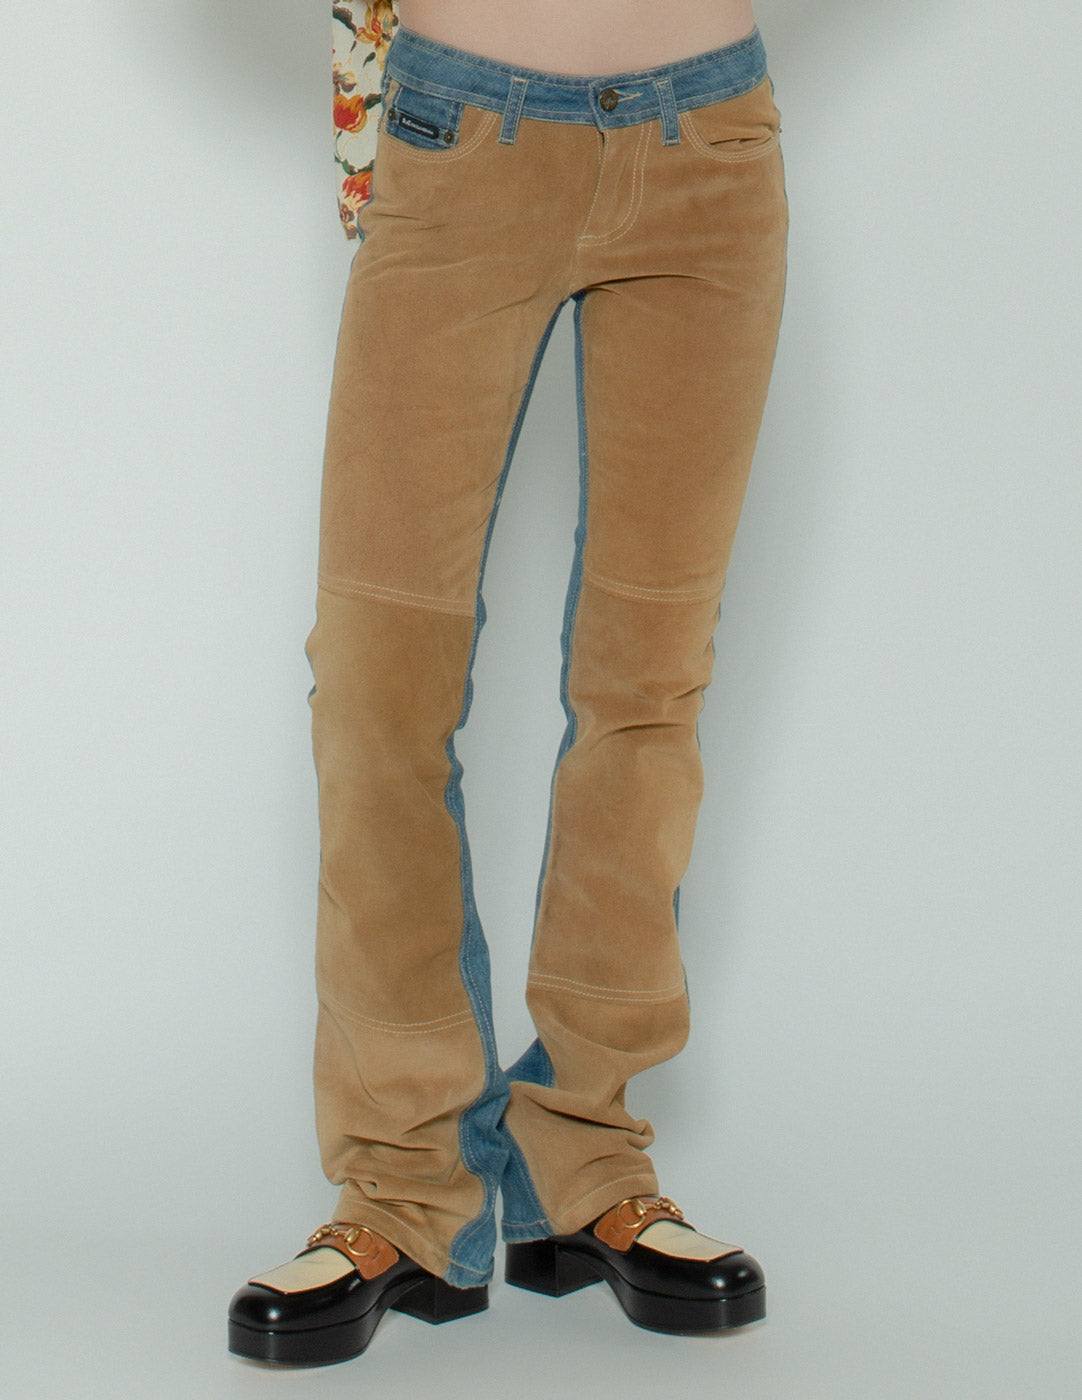 D&G vintage low-rise suede jeans front detail